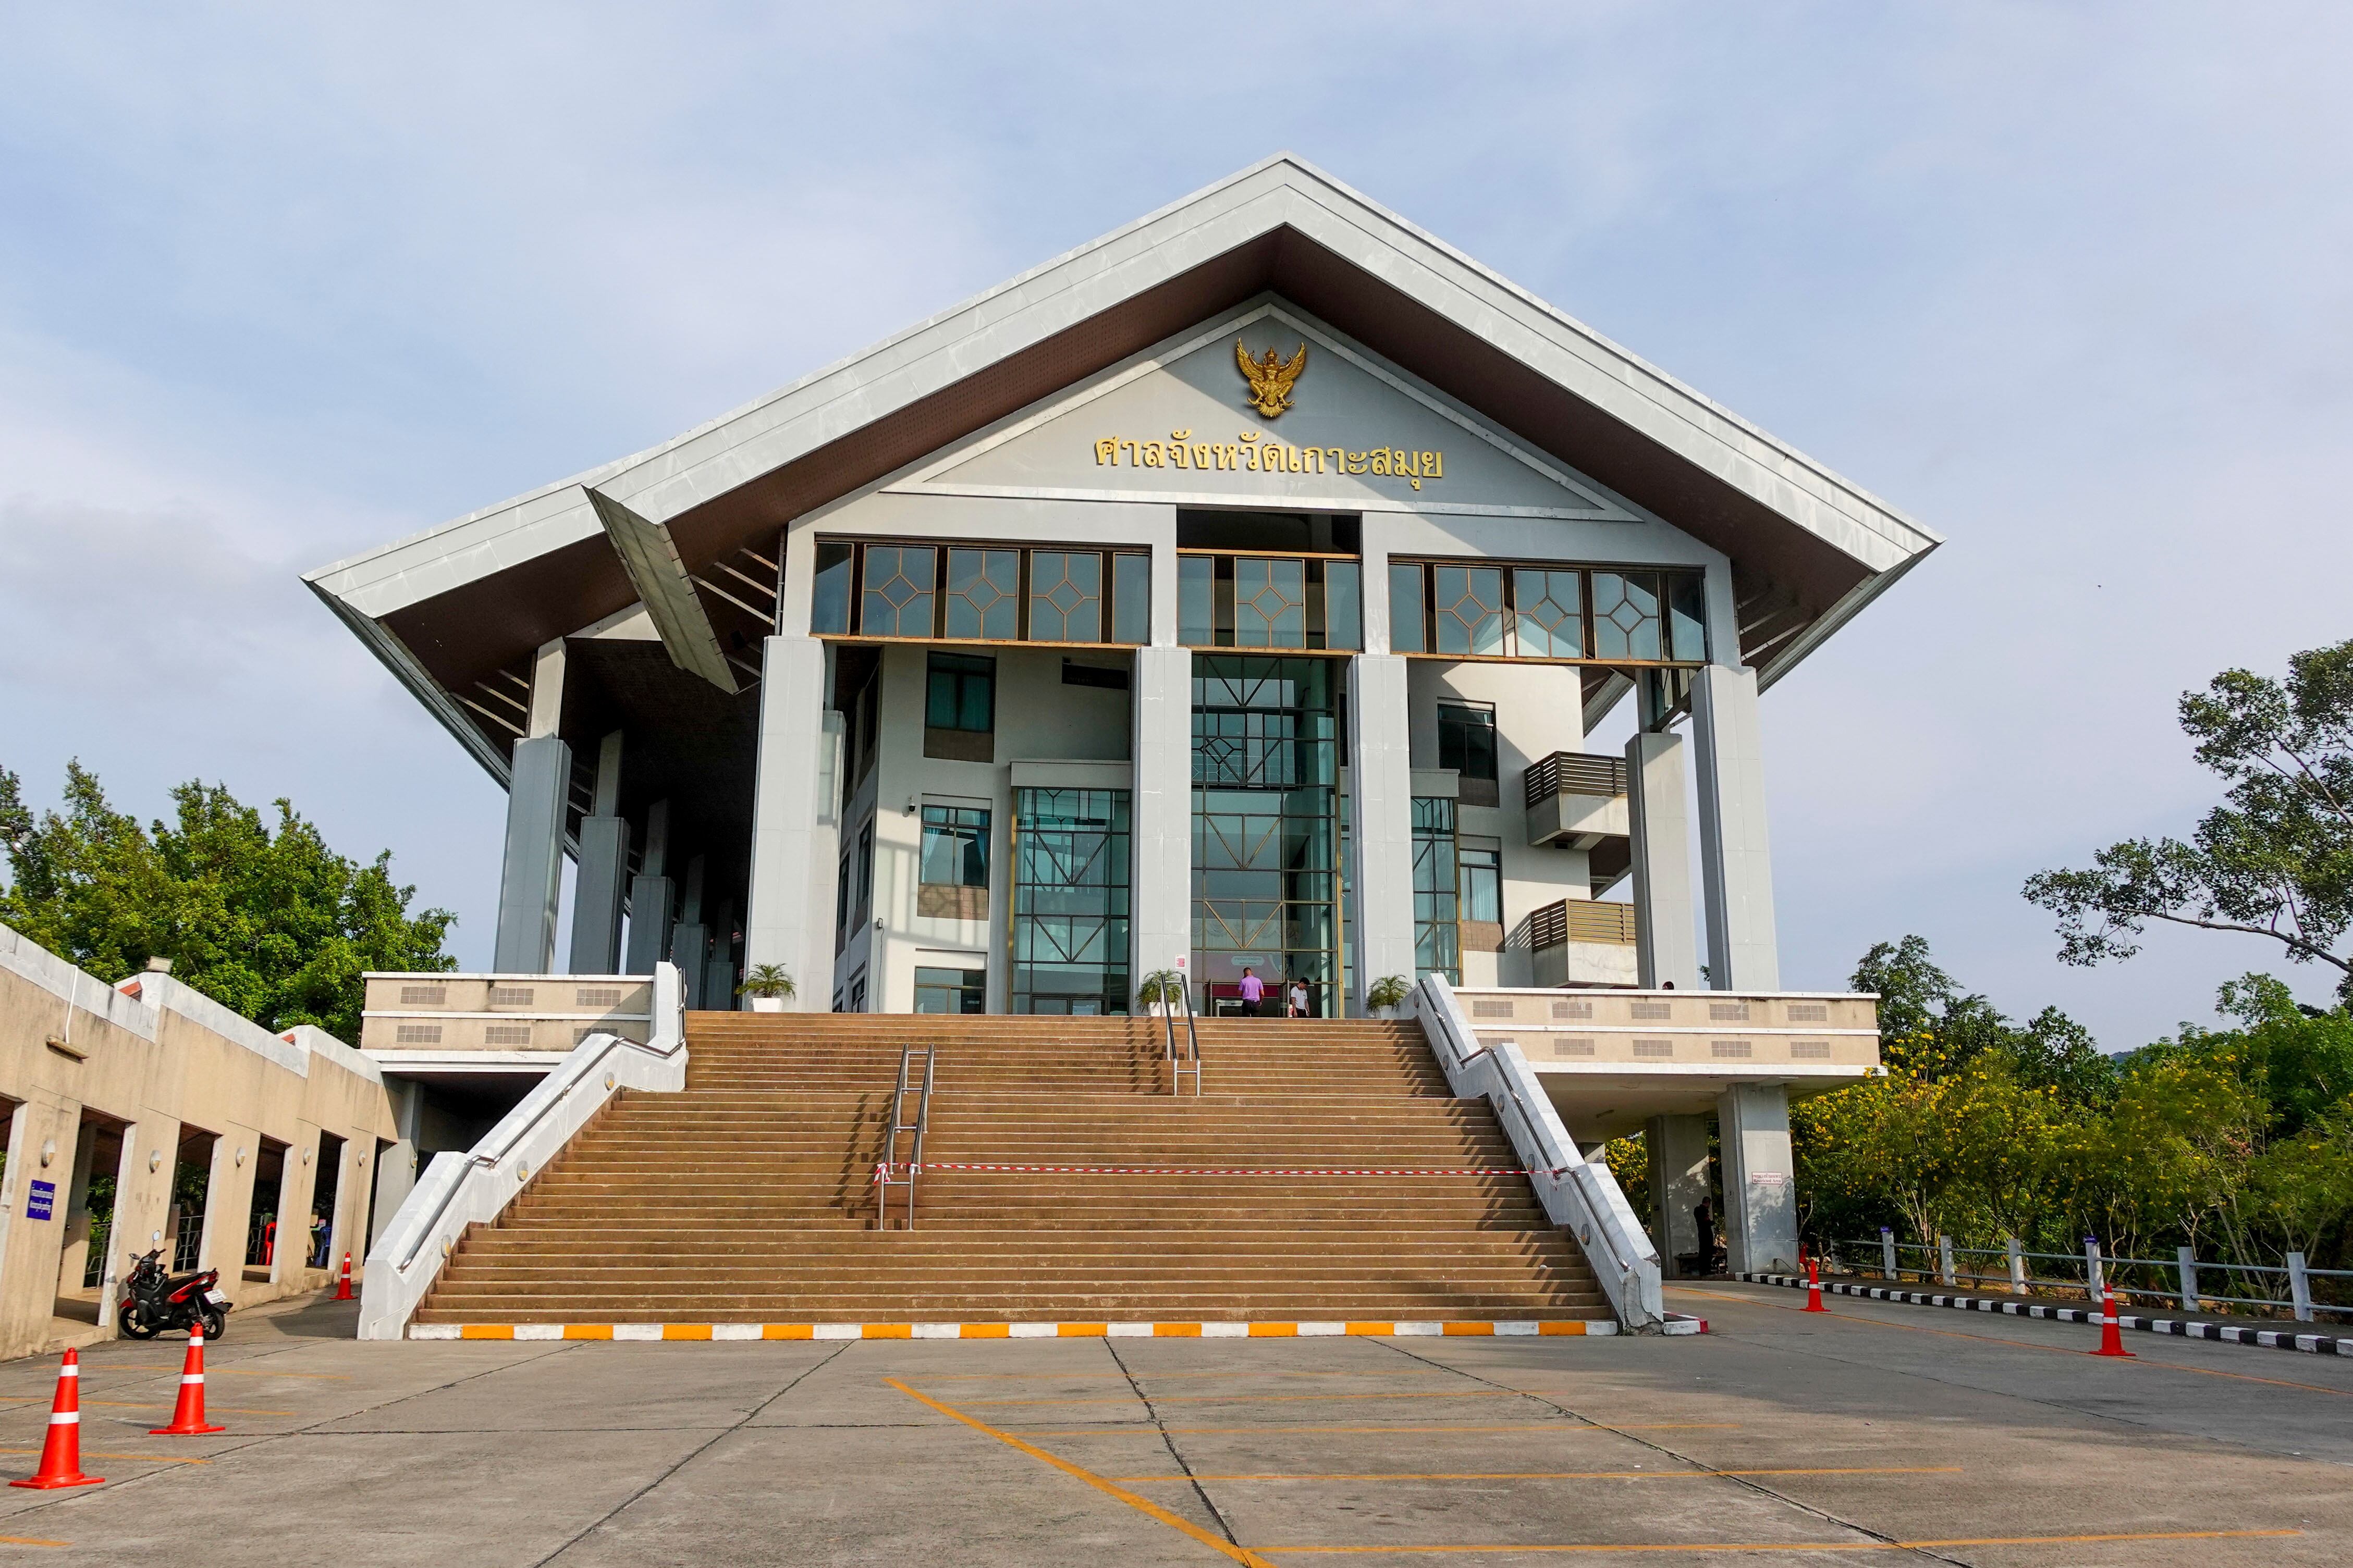 Vista del edificio del tribunal provincial de Samui (isla del sur de Tailandia) donde se celebra el juicio contra el español Daniel Sancho, este miércoles.